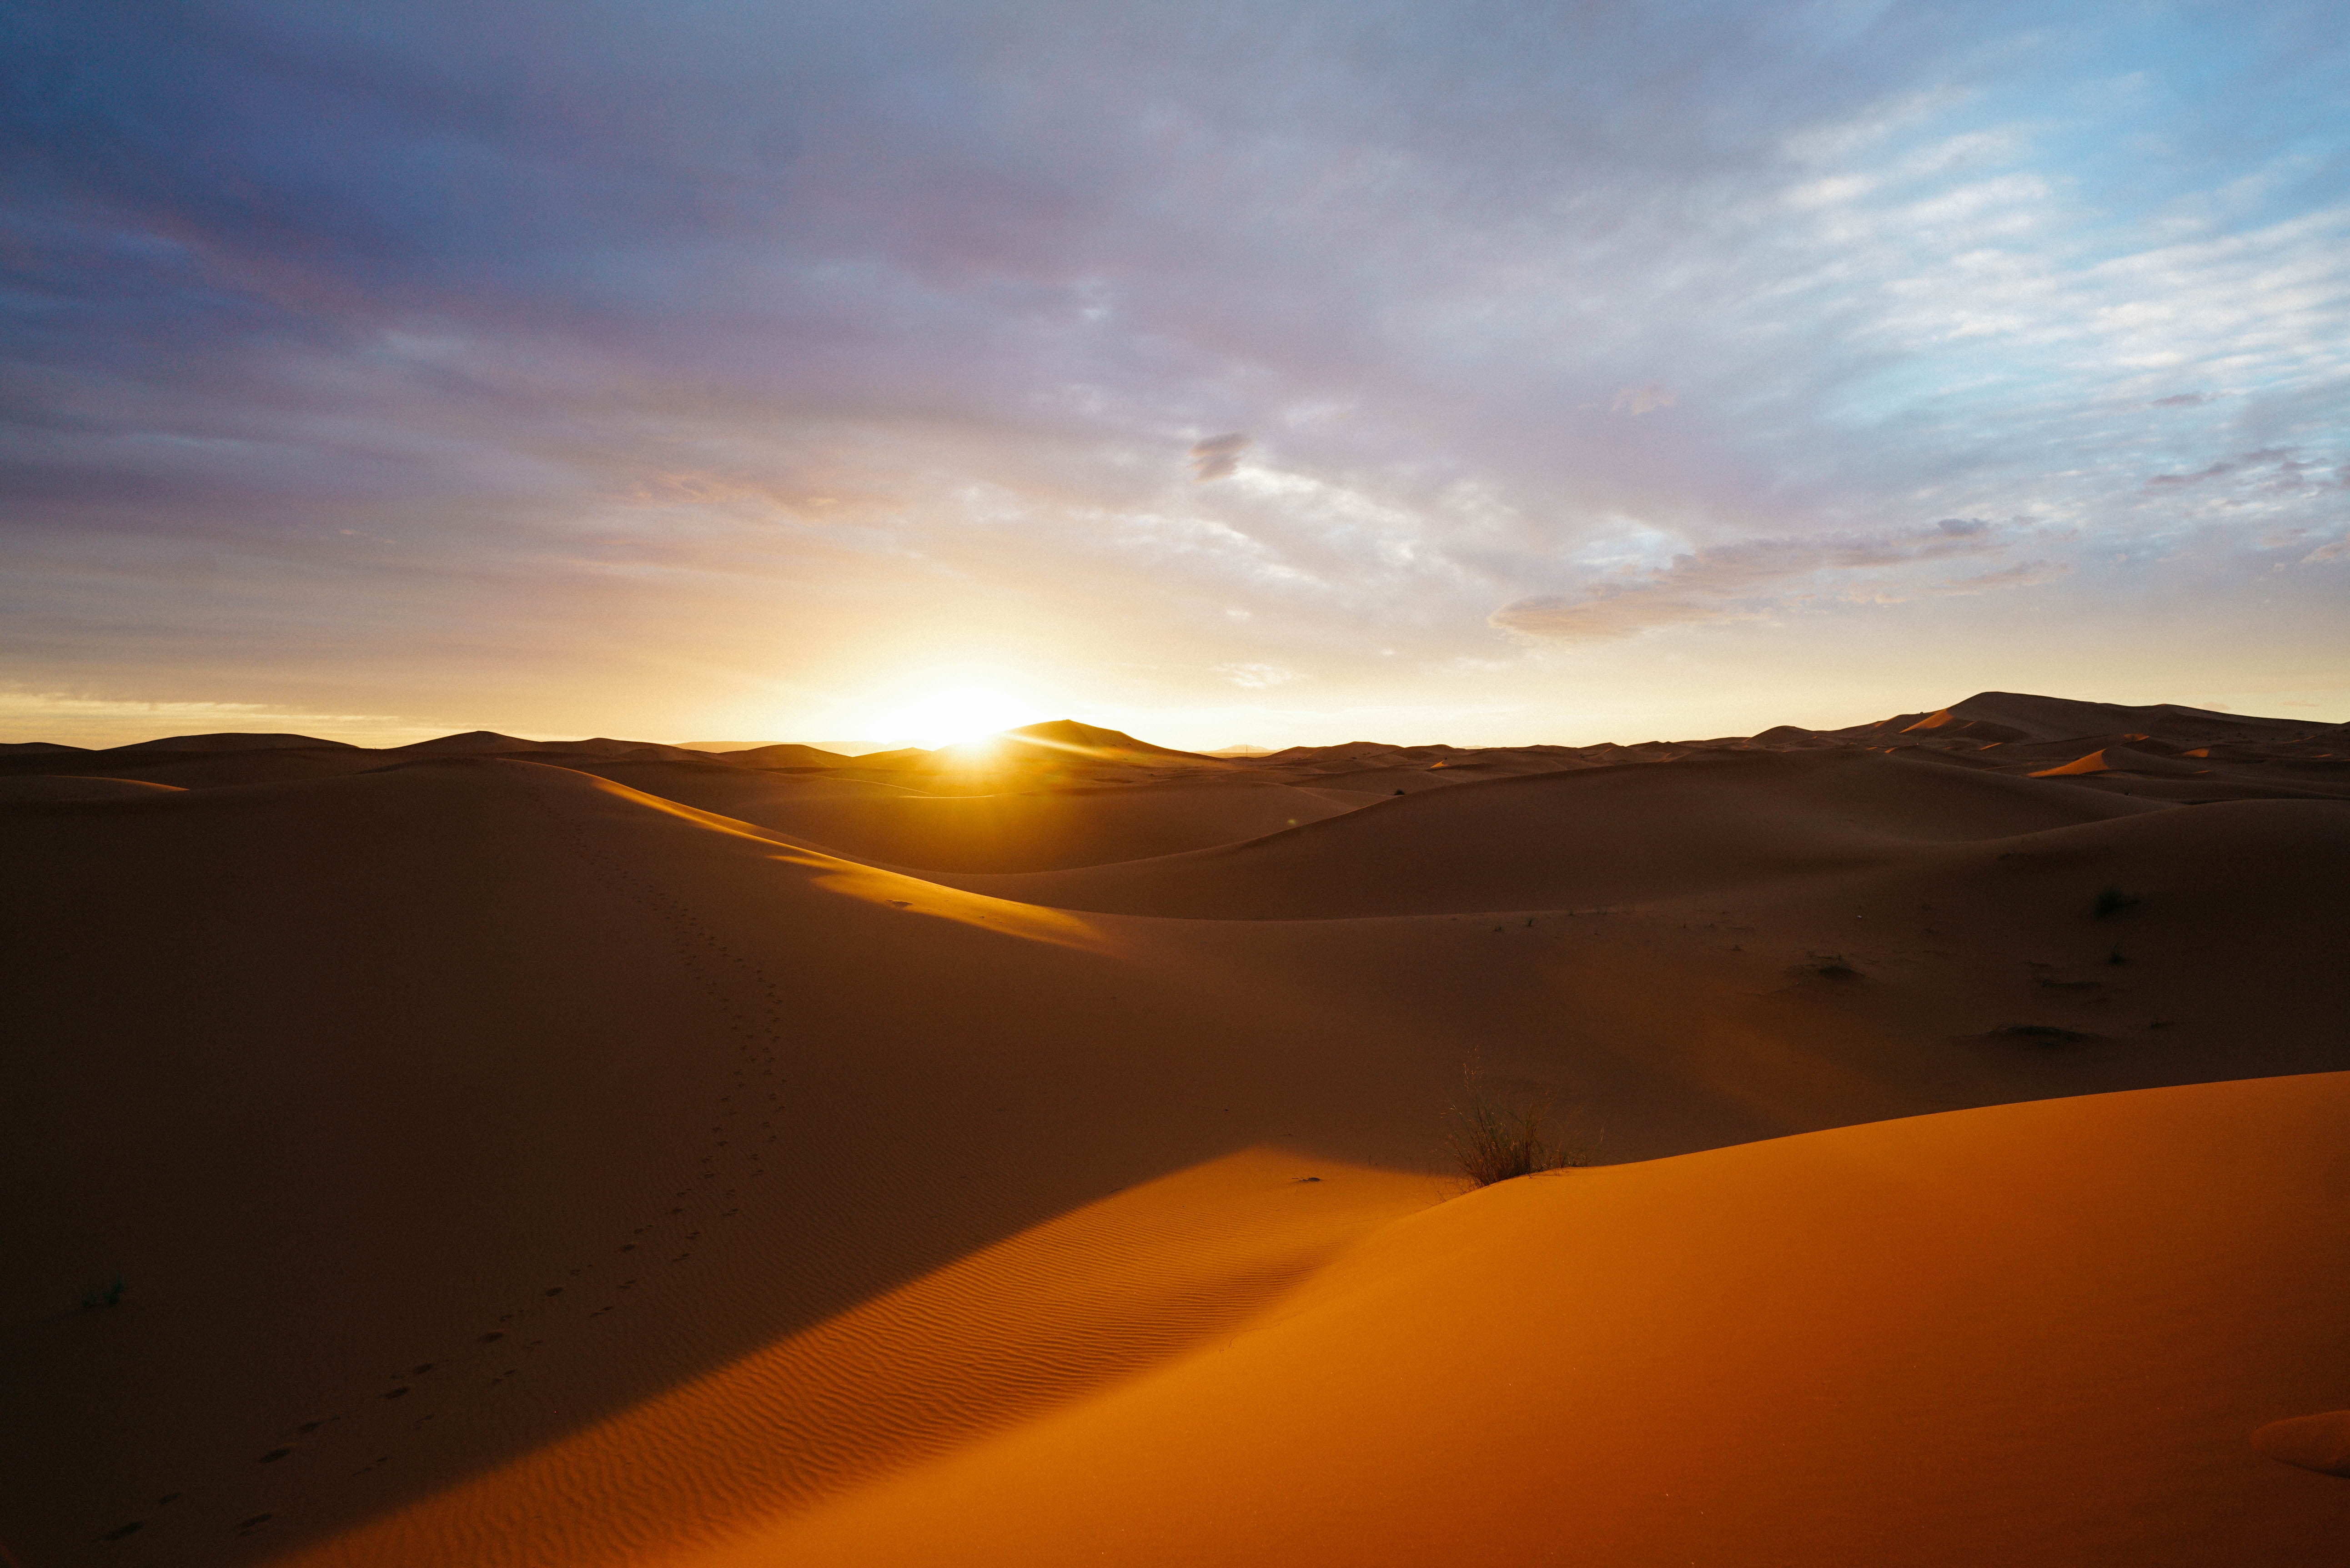 サハラ砂漠の観光はラクダに乗ってオアシスめぐり 絶景の夕日はおすすめ Travelnote トラベルノート